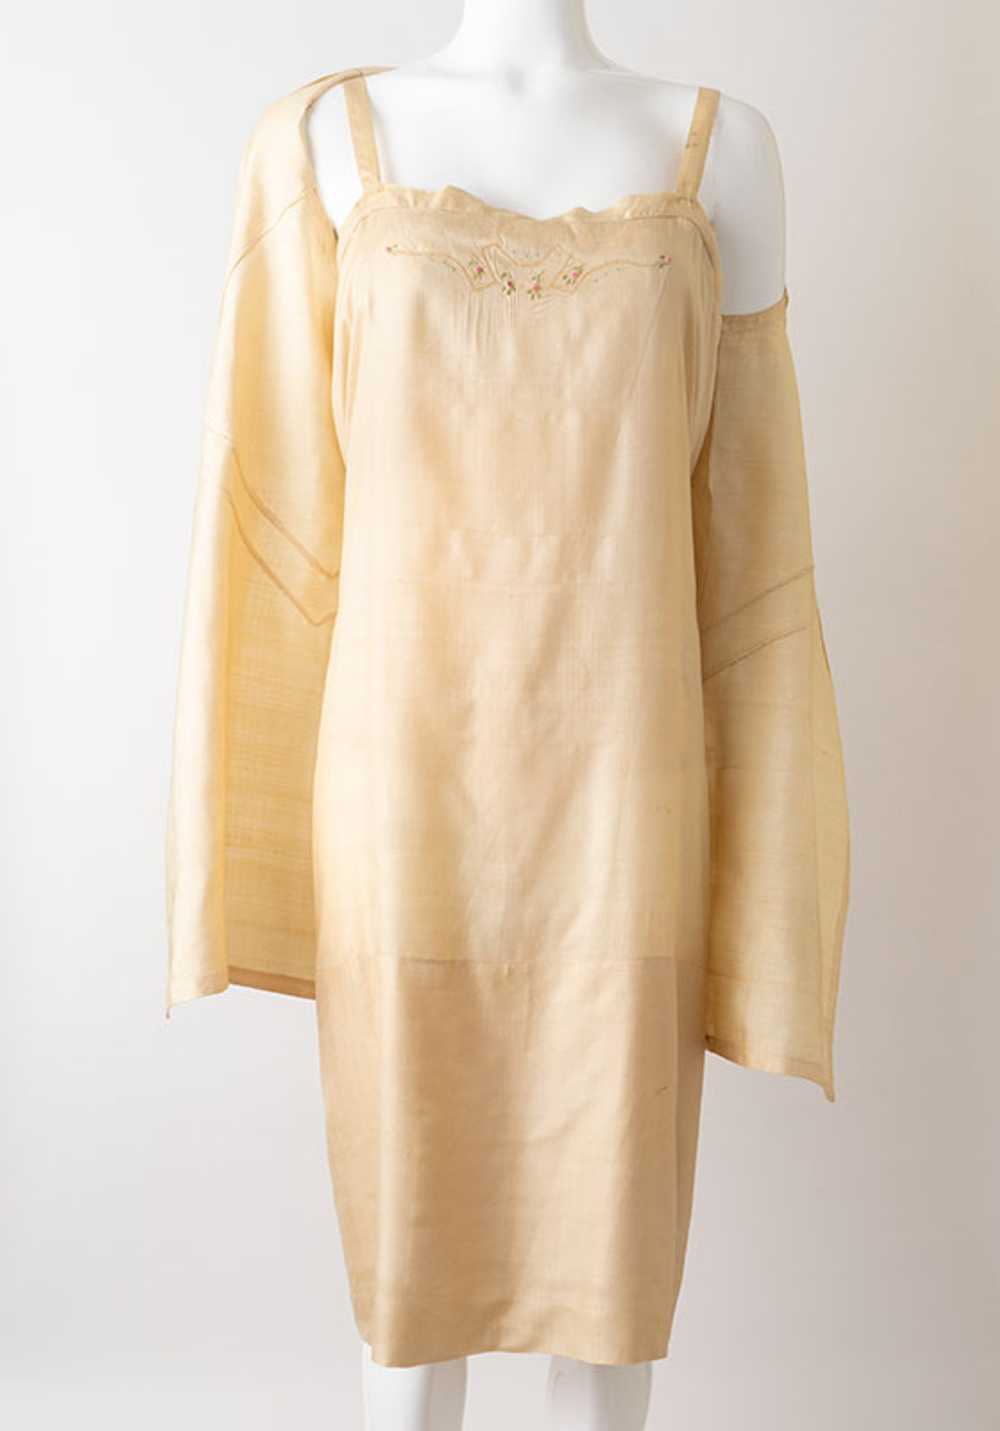 1920s Raw Silk Flapper Dress - image 2